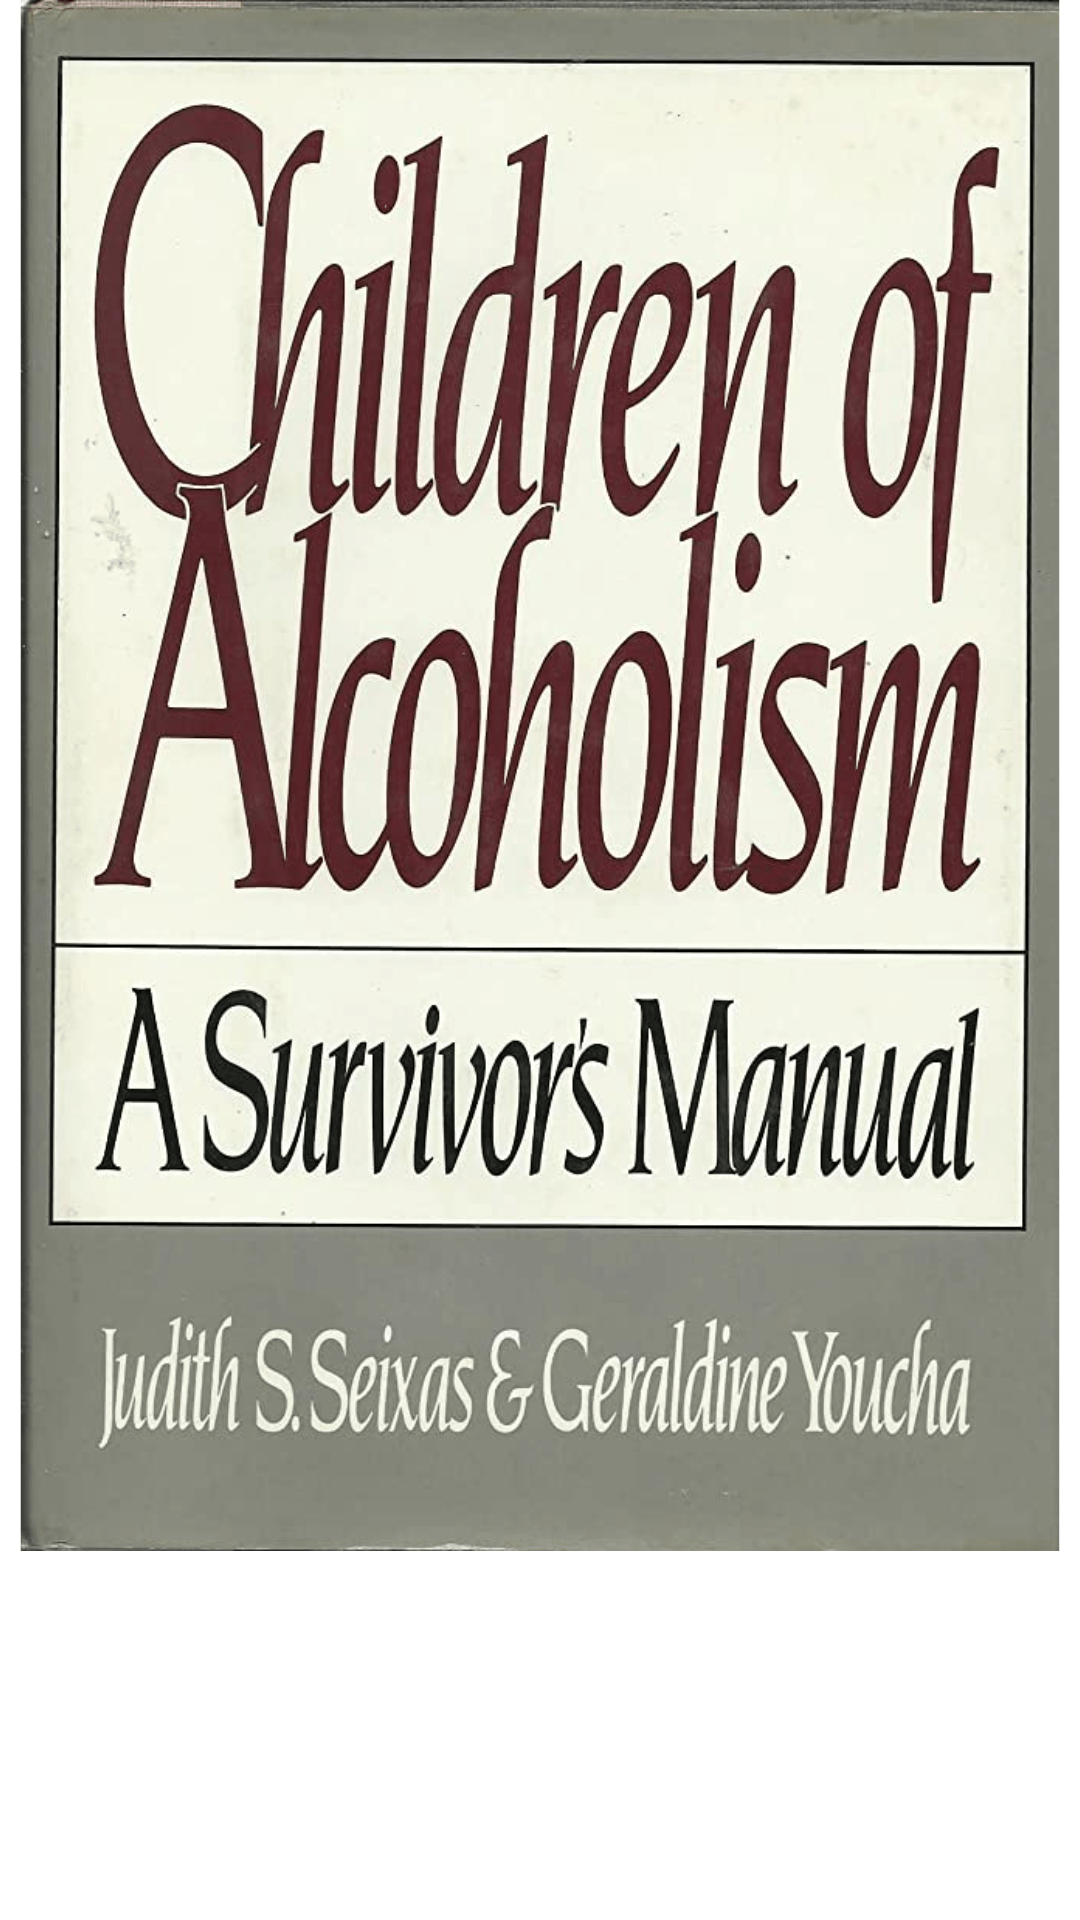 Children of Alcoholism: A Survivor's Manual